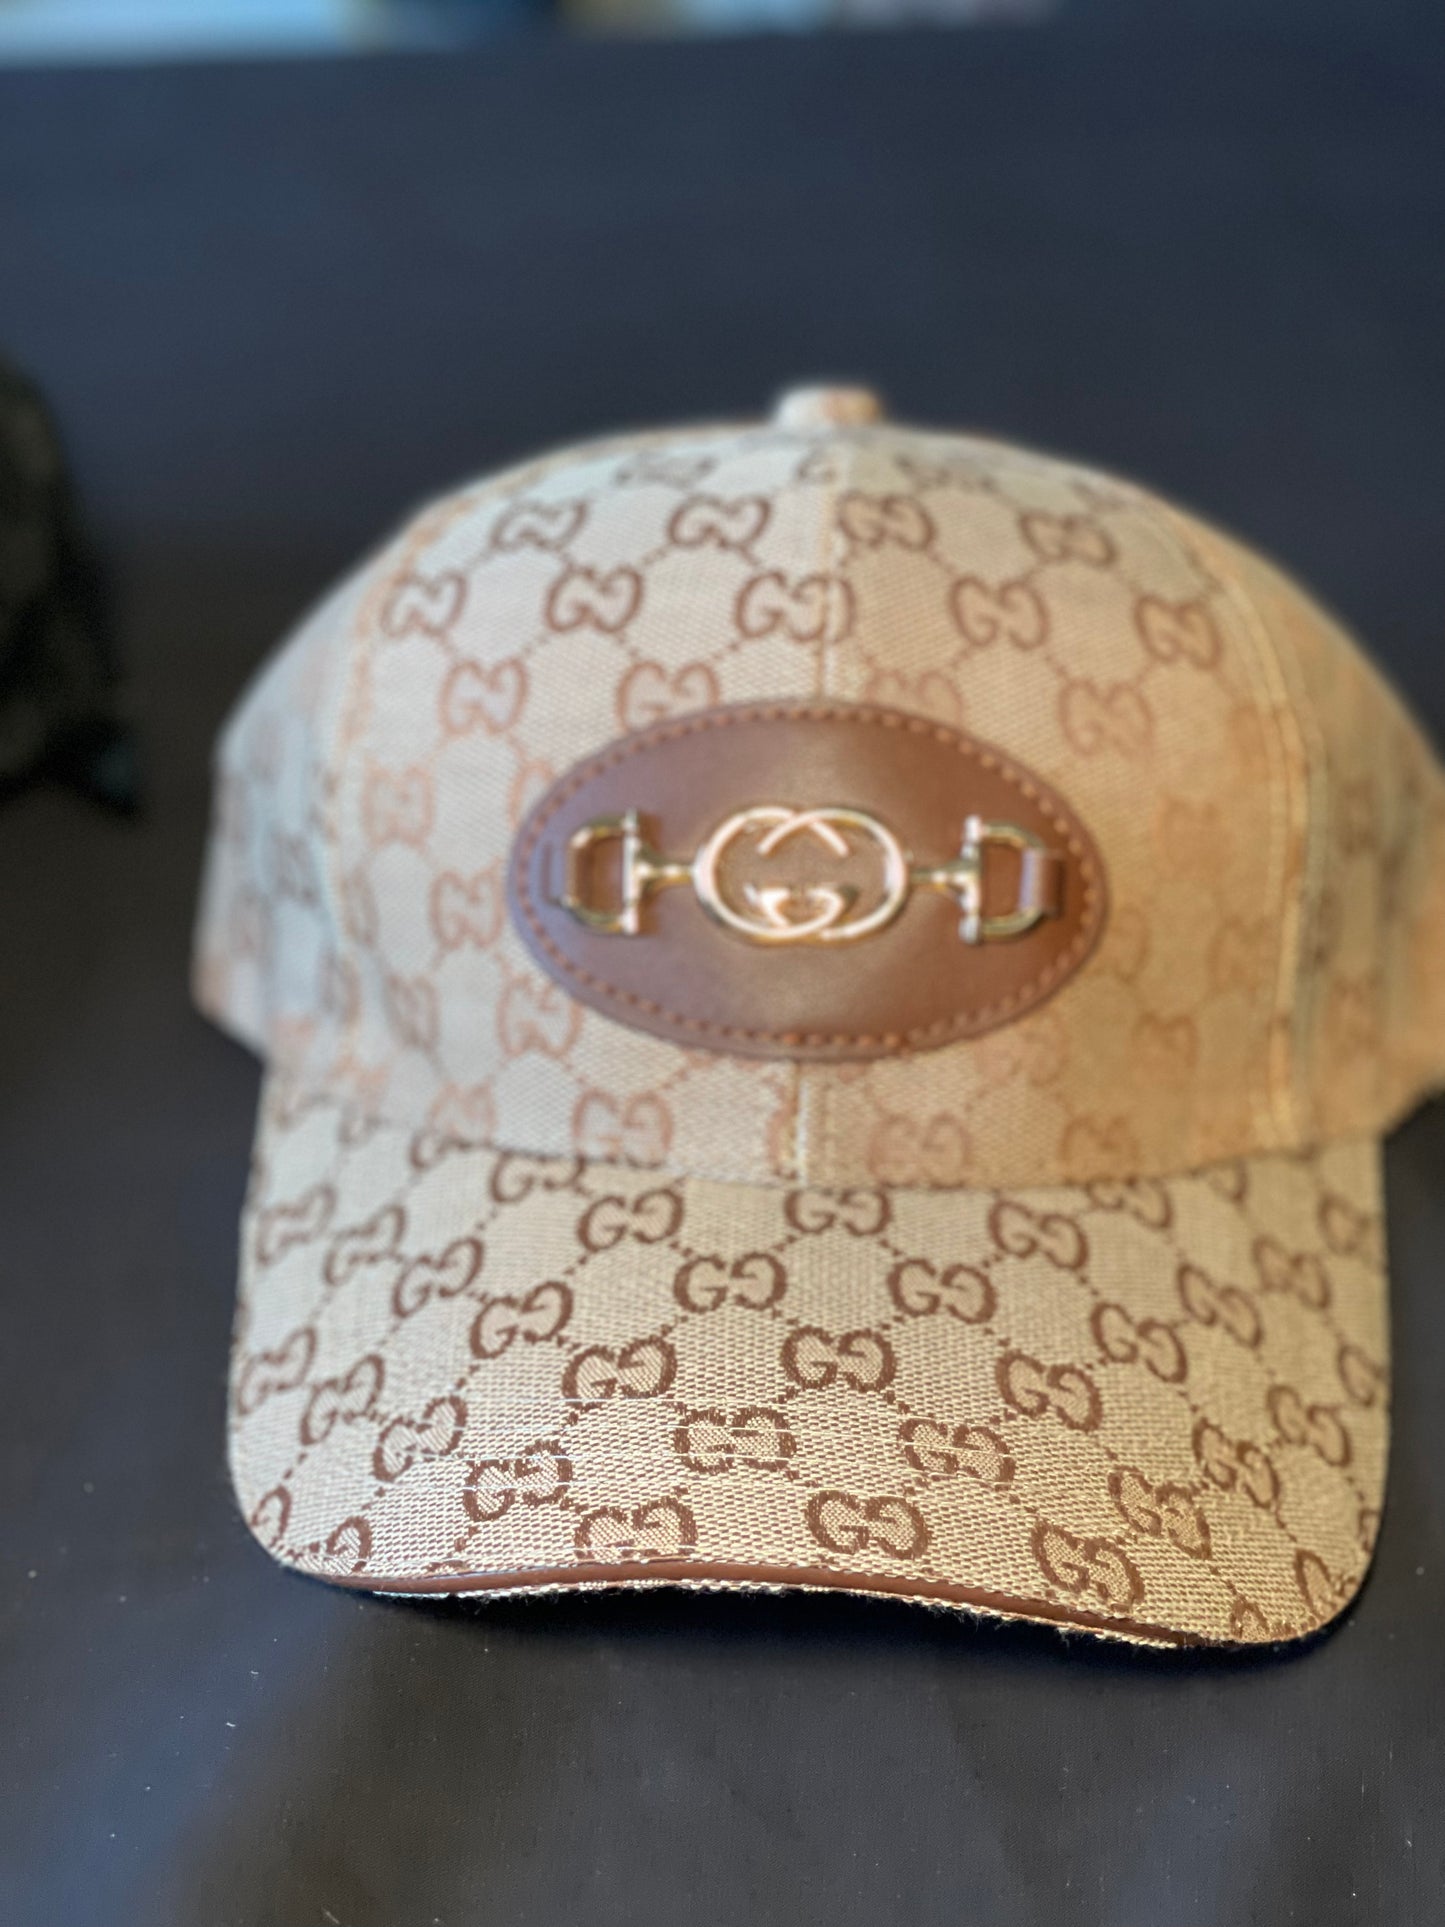 Tha G hat